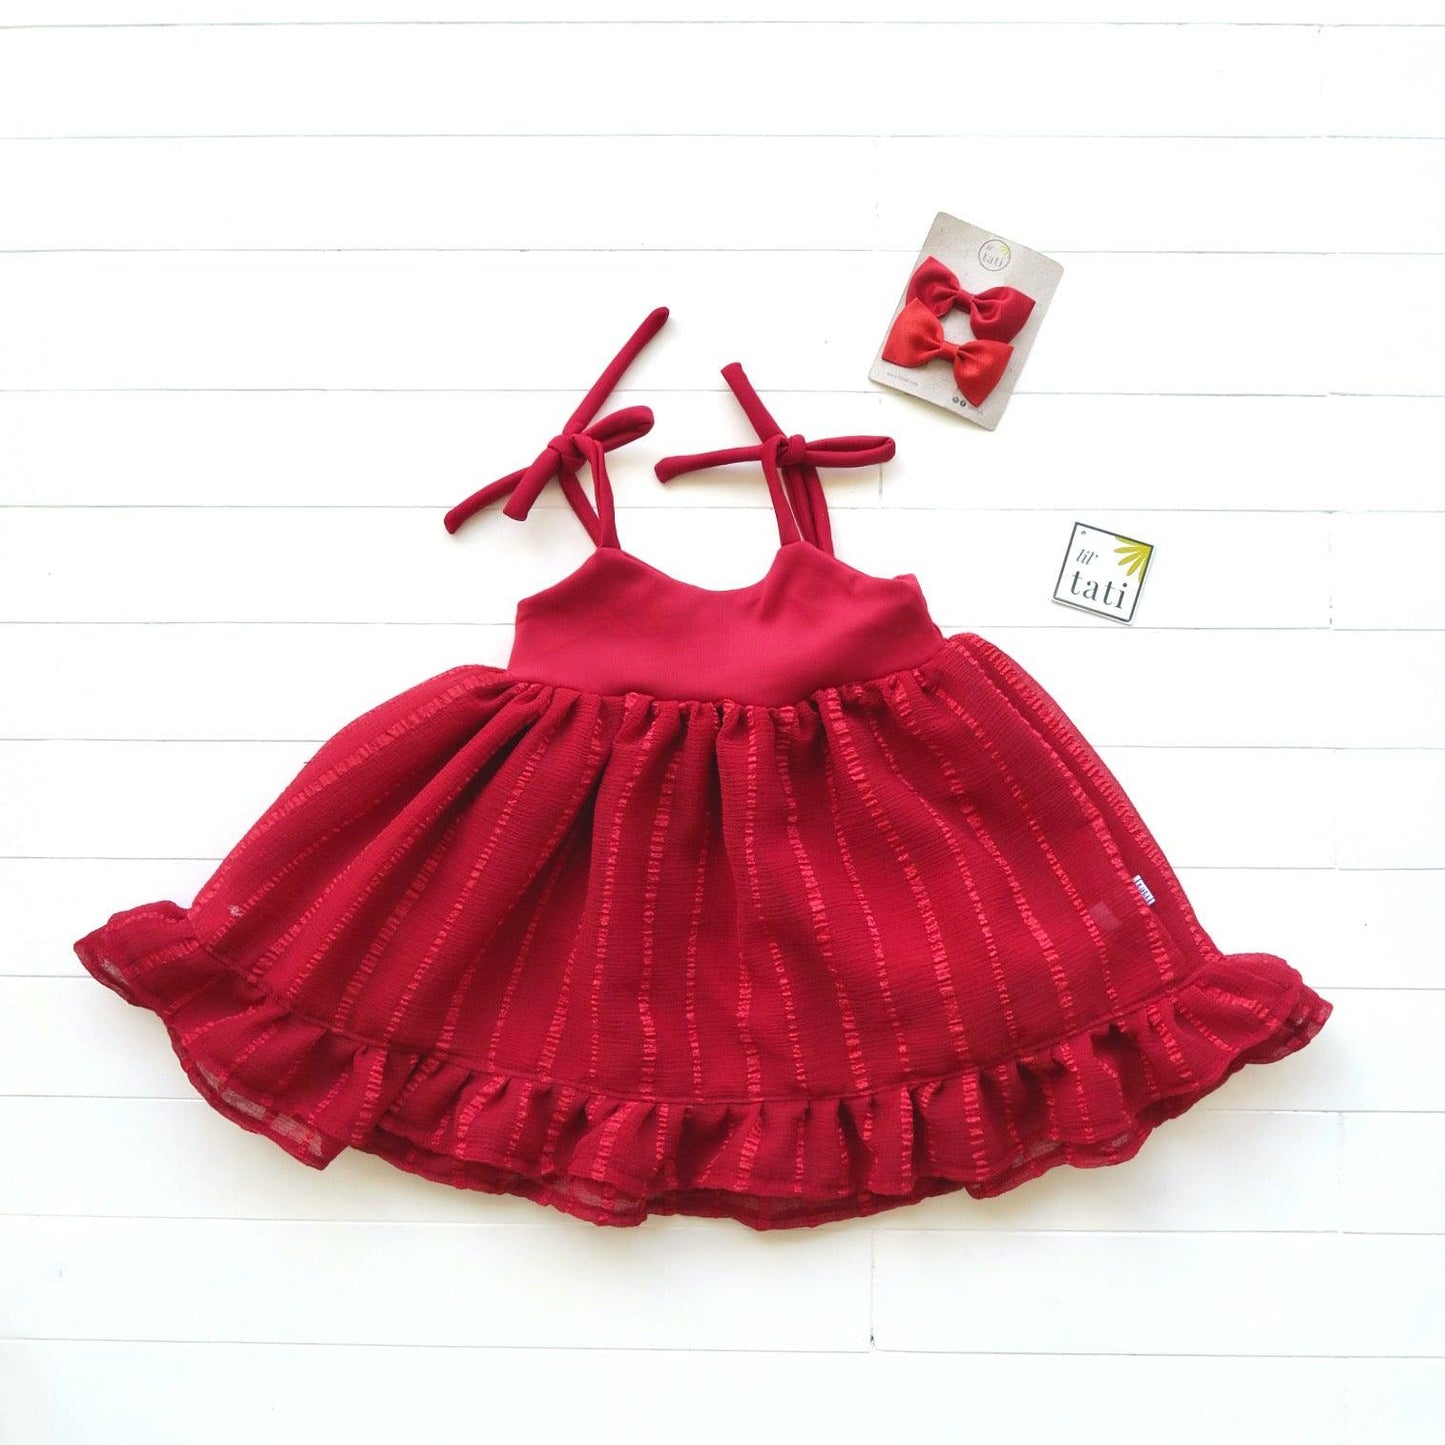 Dahlia Dress - Tie-Strap in Red Neoprene and Red Shear Stripes - Lil' Tati